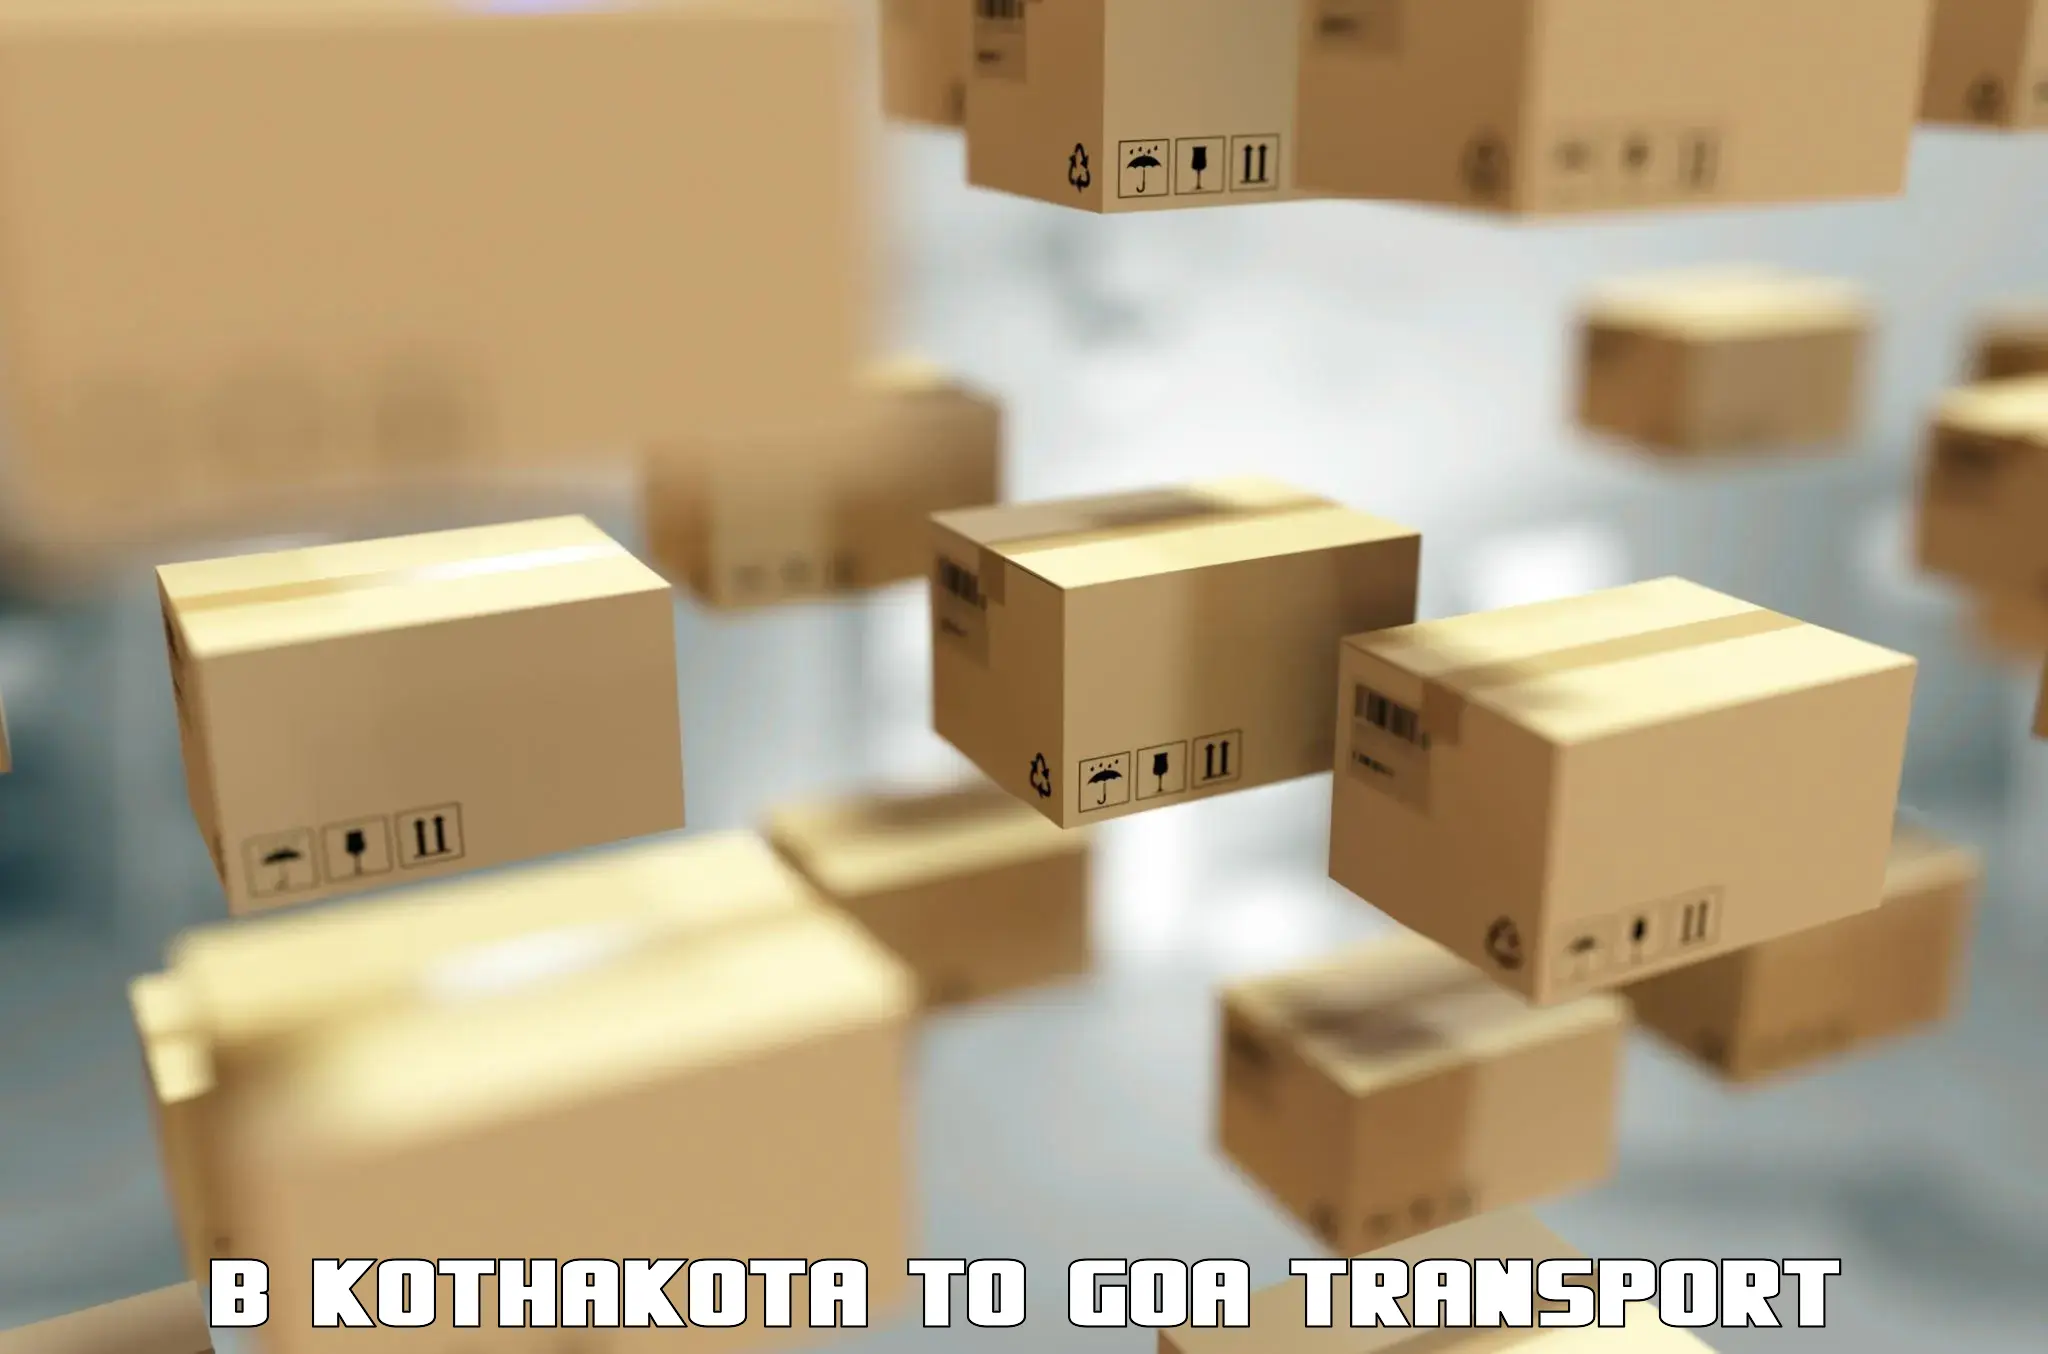 Luggage transport services B Kothakota to Goa